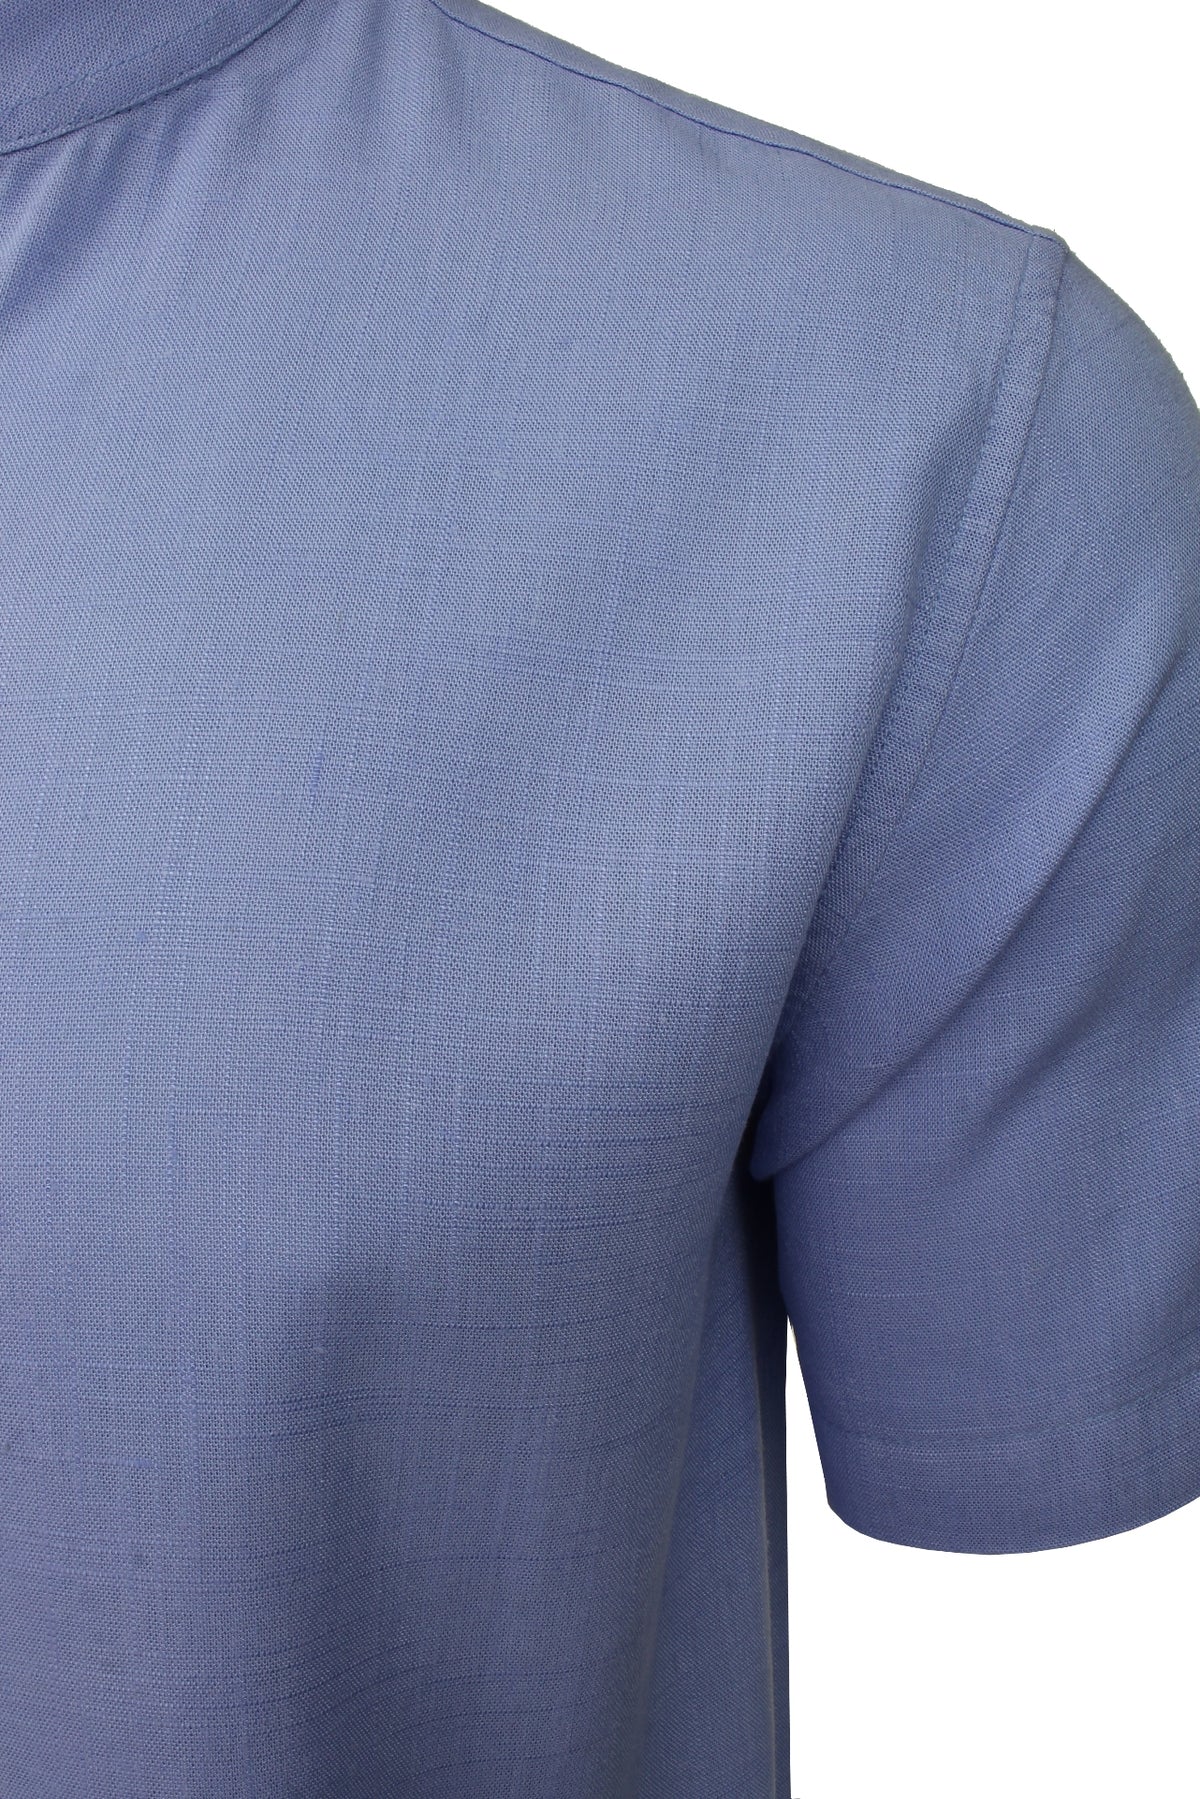 Brave Soul Mens 'Anglo' Linen Mix Grandad Shirt - Short Sleeved, 02, Msh-508Anglo, Light Blue